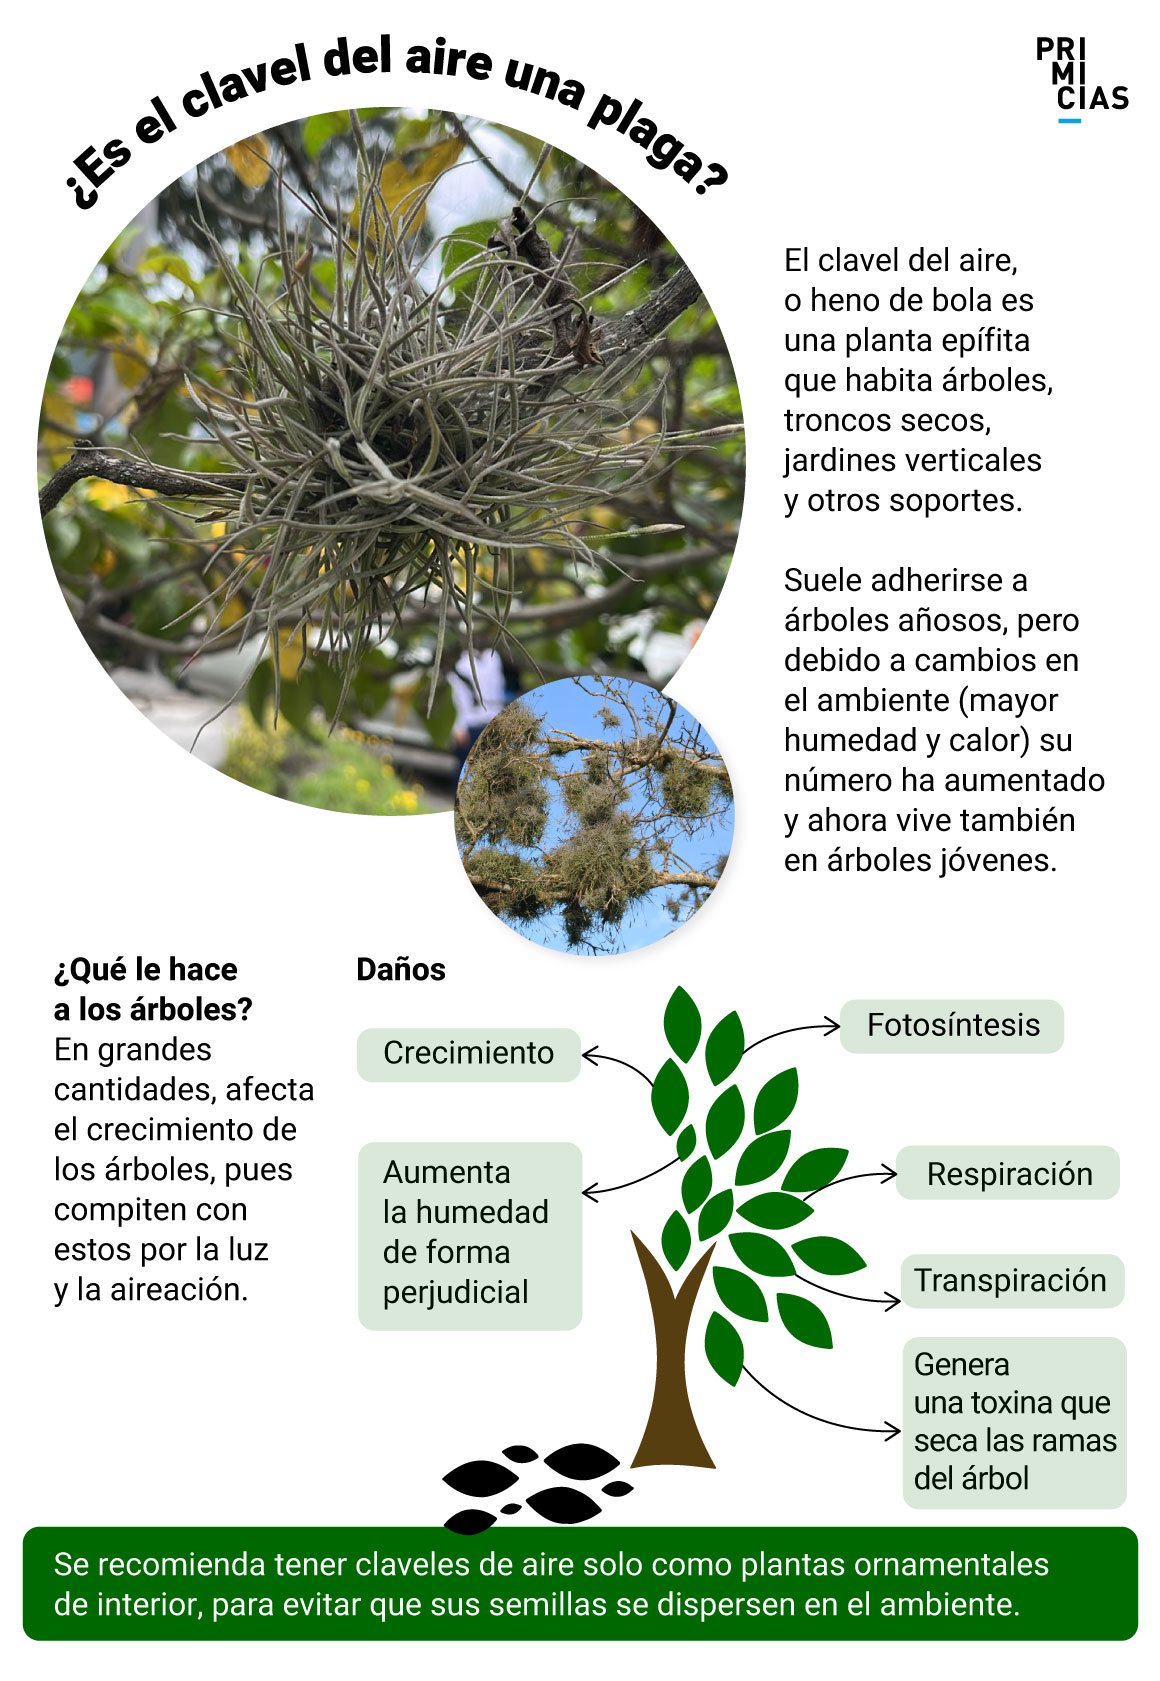 Tillandsia recurvata o clavel del aire, la planta que 'ahoga' a los árboles en Quito